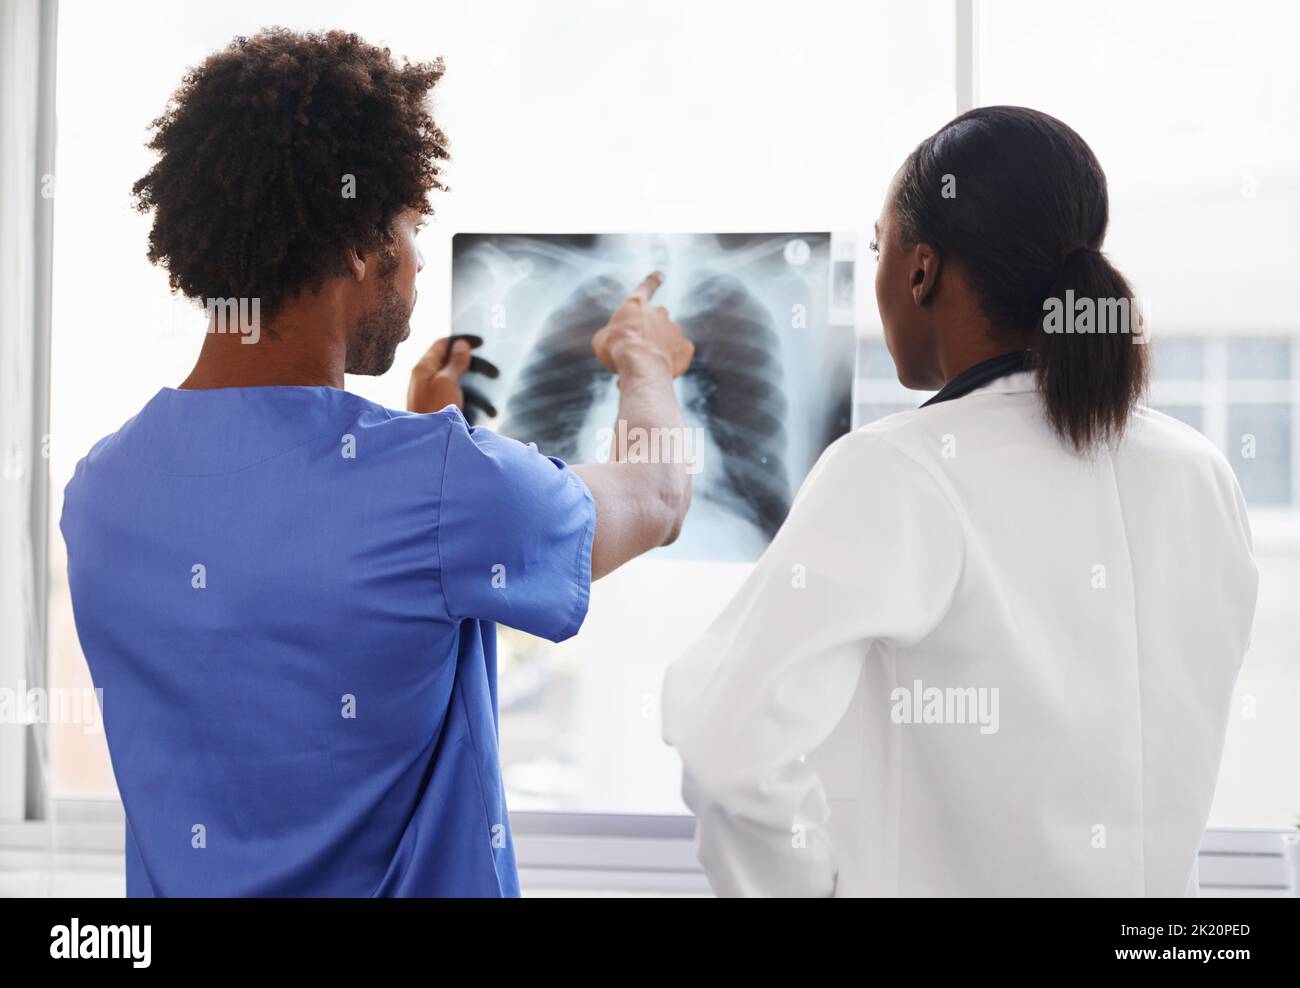 Segnalare anomalie ai raggi X. medico e infermiere di sesso femminile che studiano i raggi X. Foto Stock